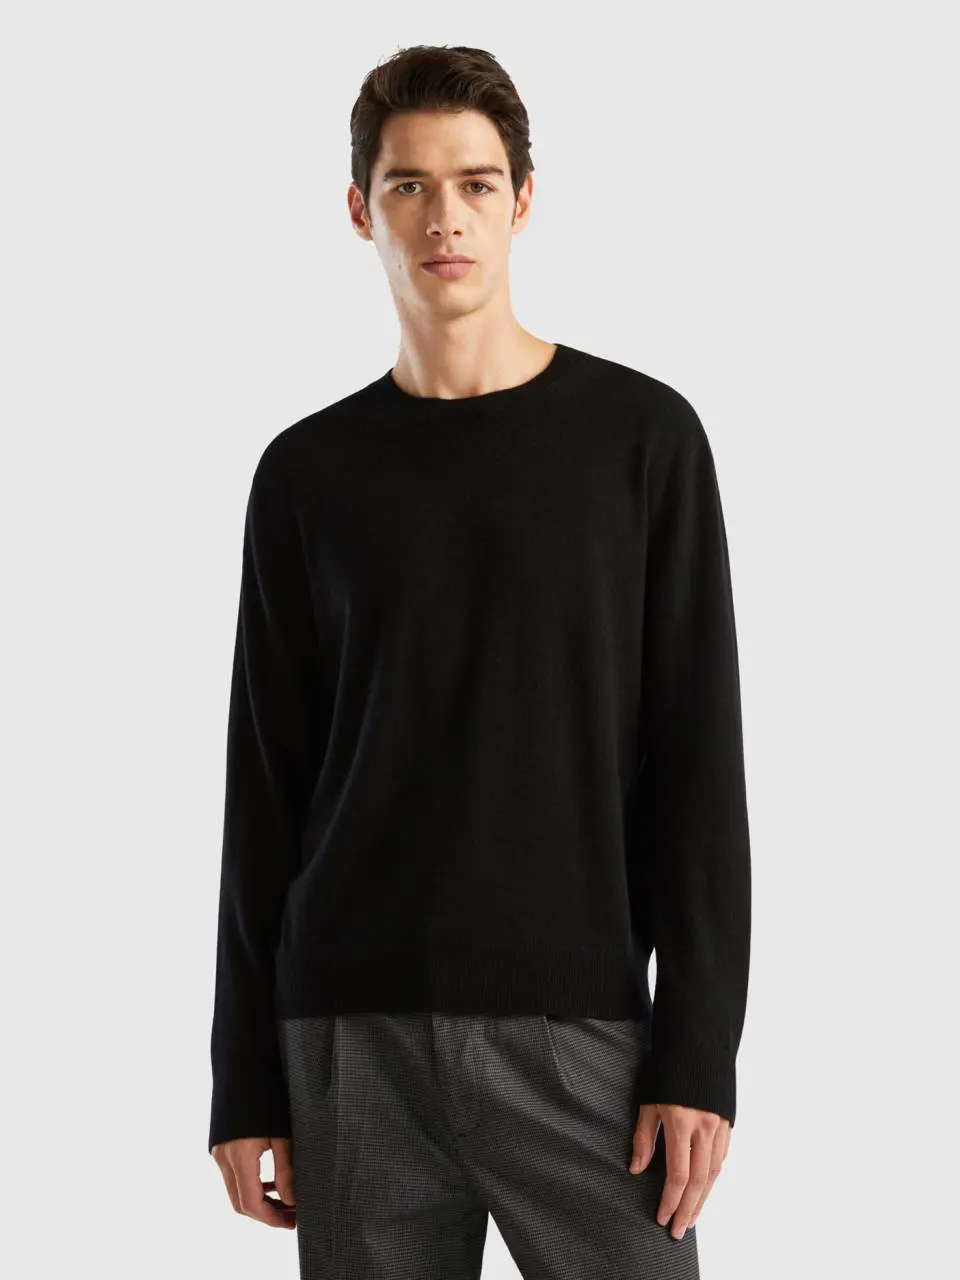 Benetton black sweater in pure cashmere. 1